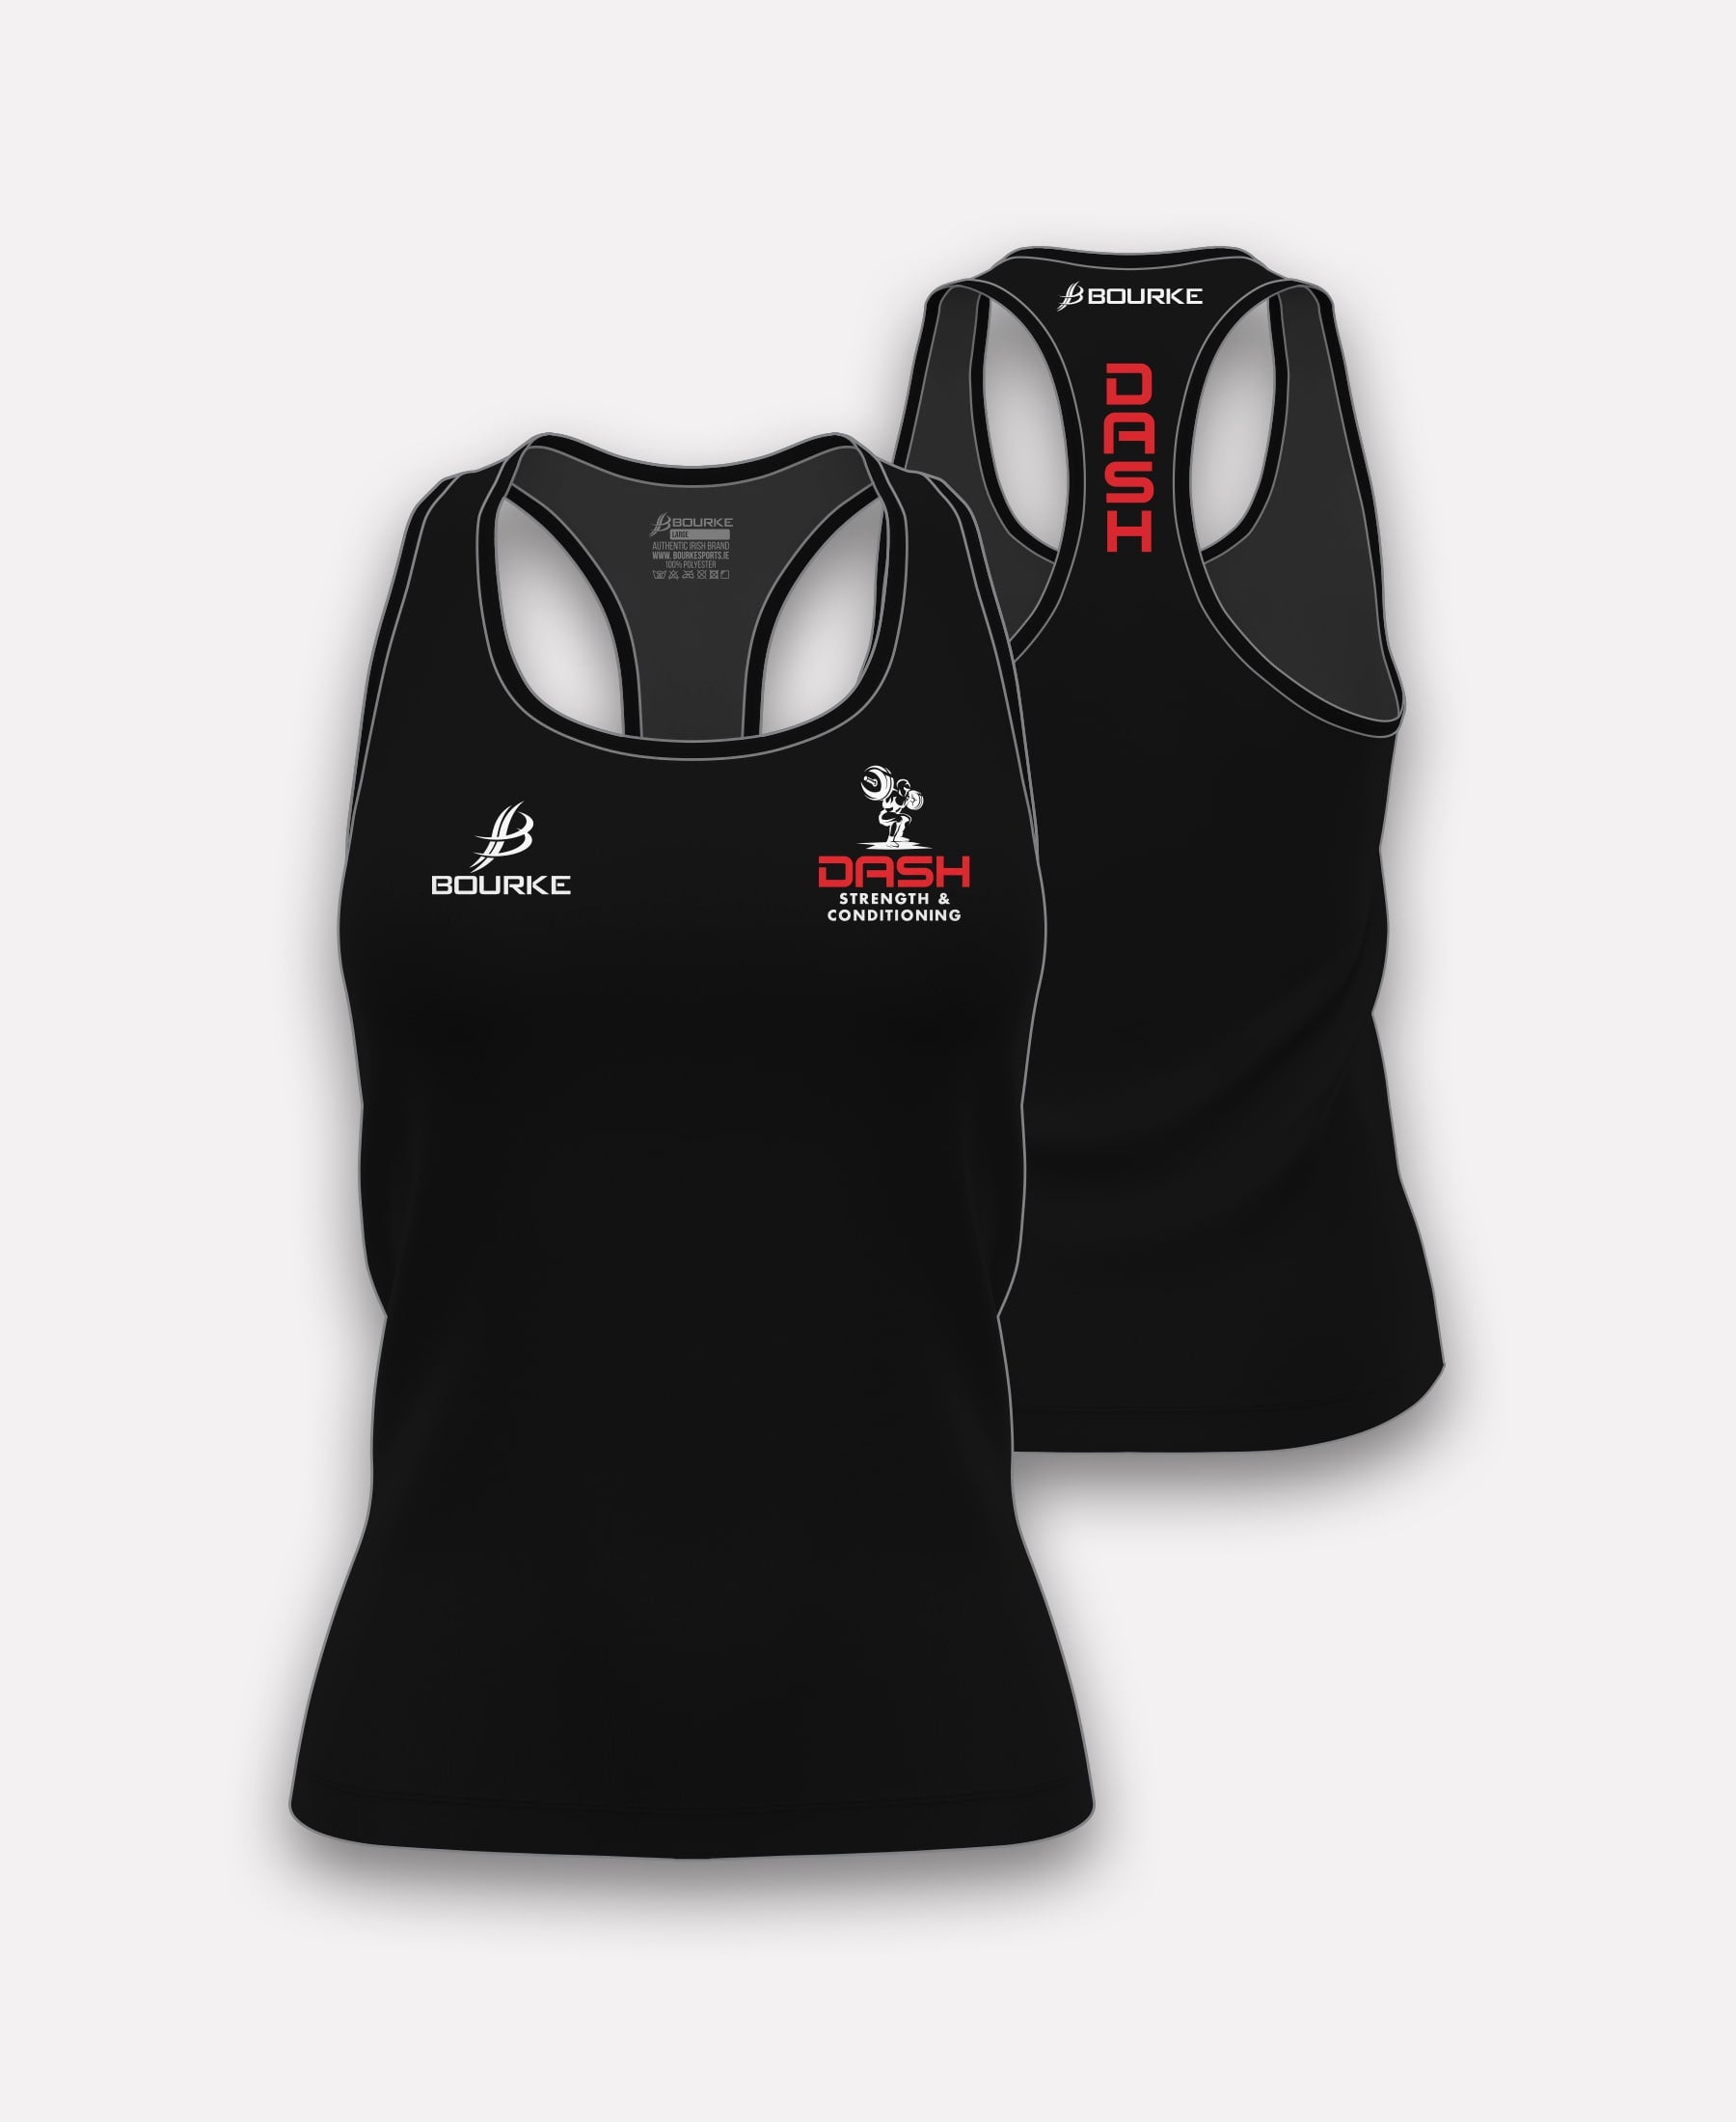 DASH Strength & Conditioning Ladies Vest (Black)